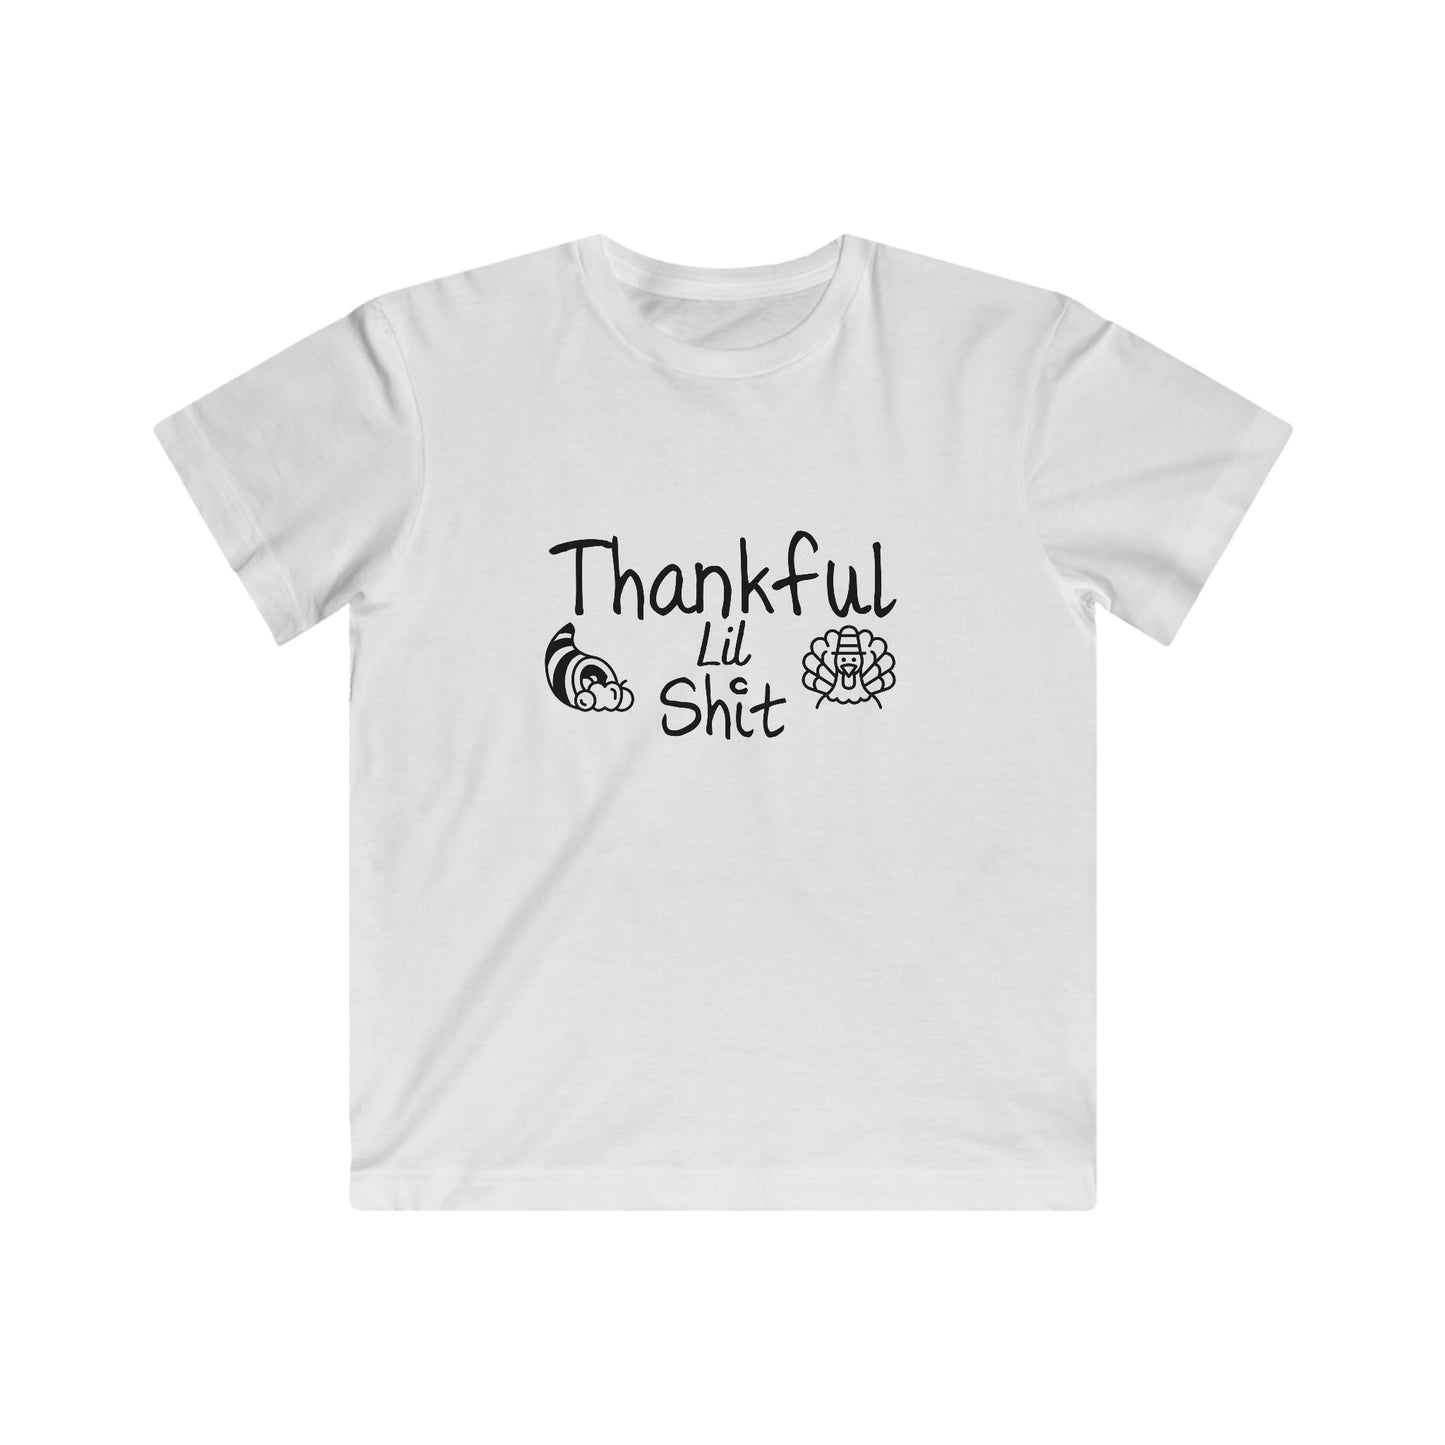 Kids Thankful Tee, Kids Thanksgiving Shirt, Kids Holiday Shirt